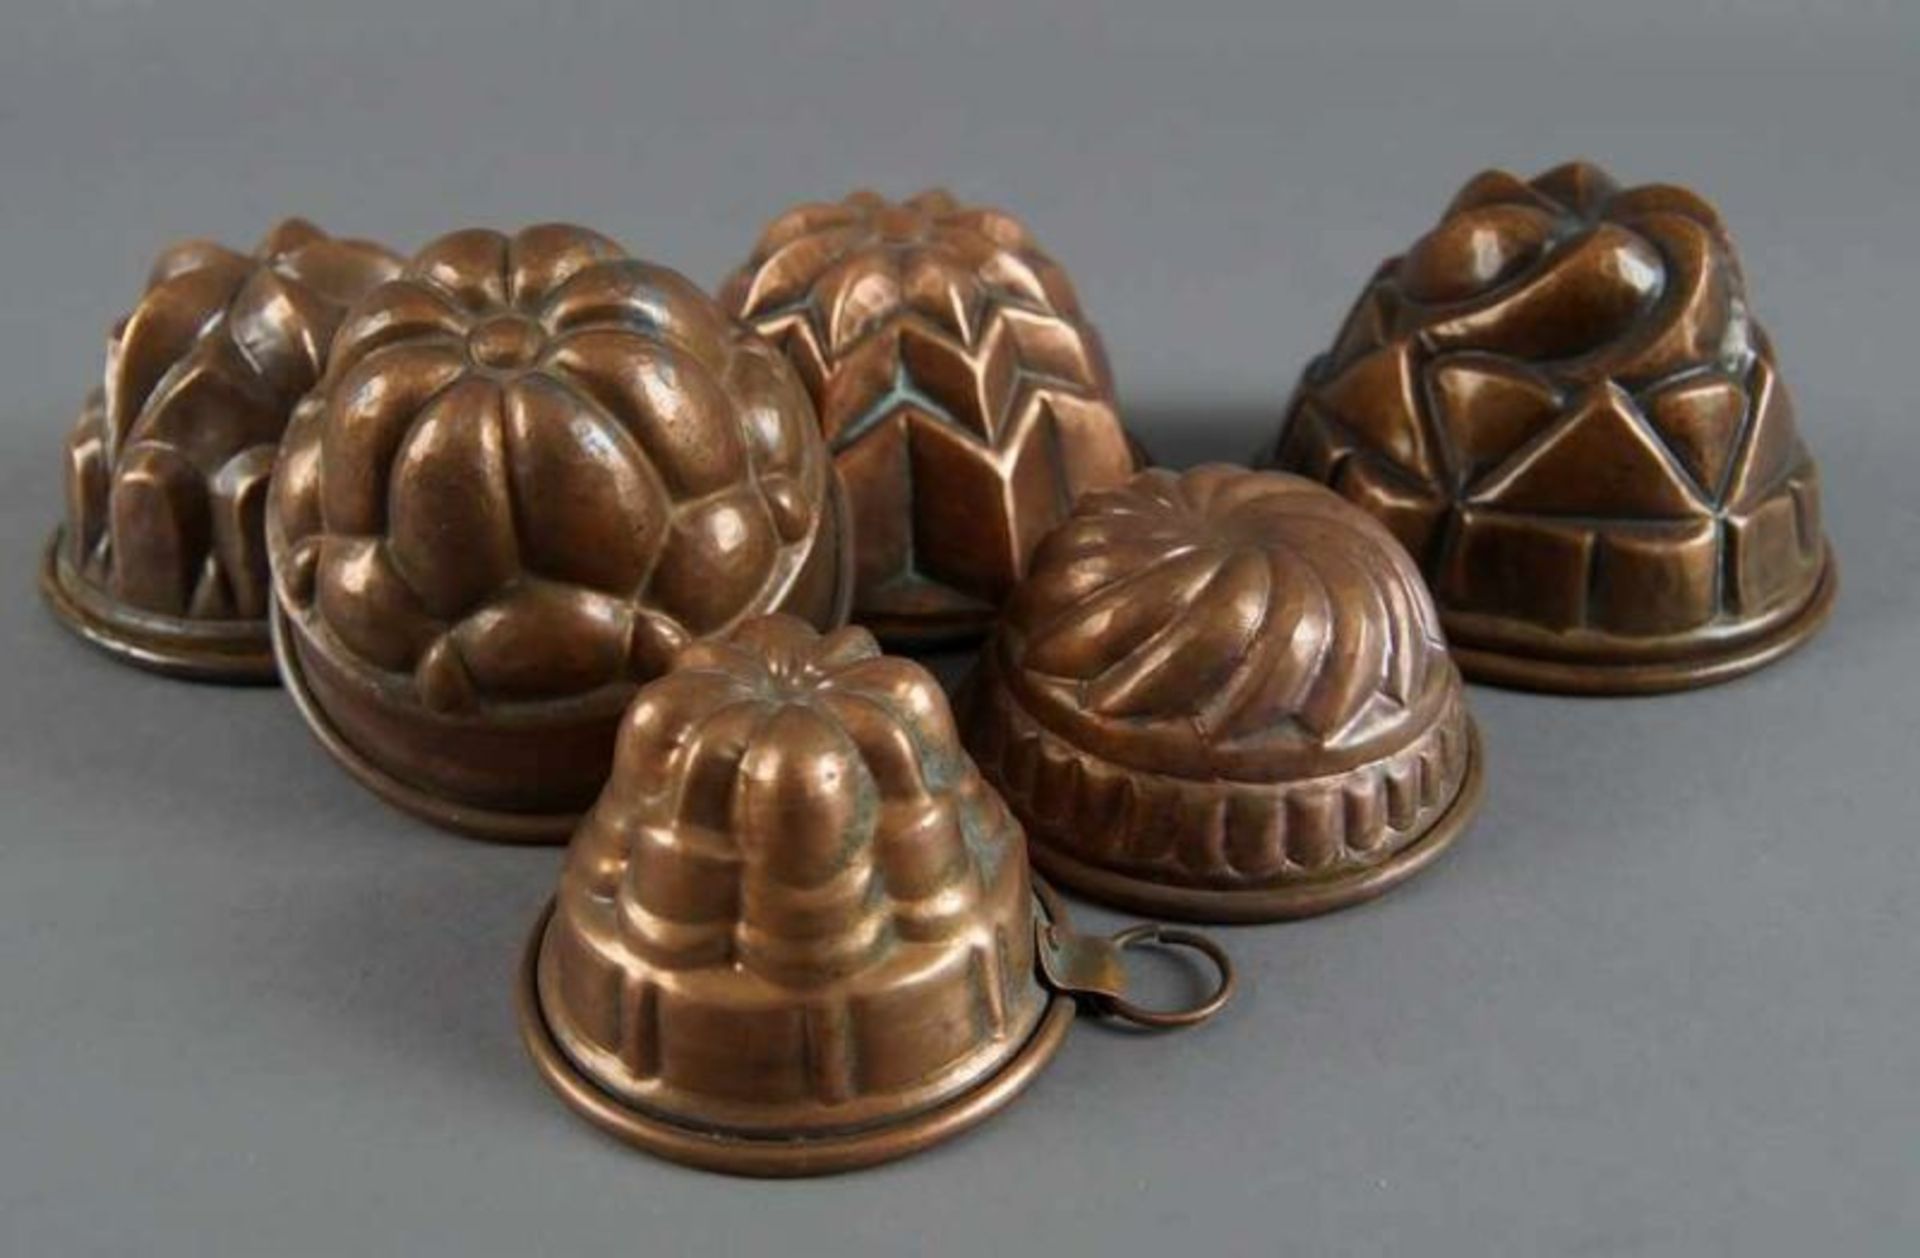 Sechs Miniatur - Guglhupf/Kuchenformen aus Kupfer, Durchmesser von 8 - 13 cm 20.17 % buyer's premium - Bild 3 aus 5